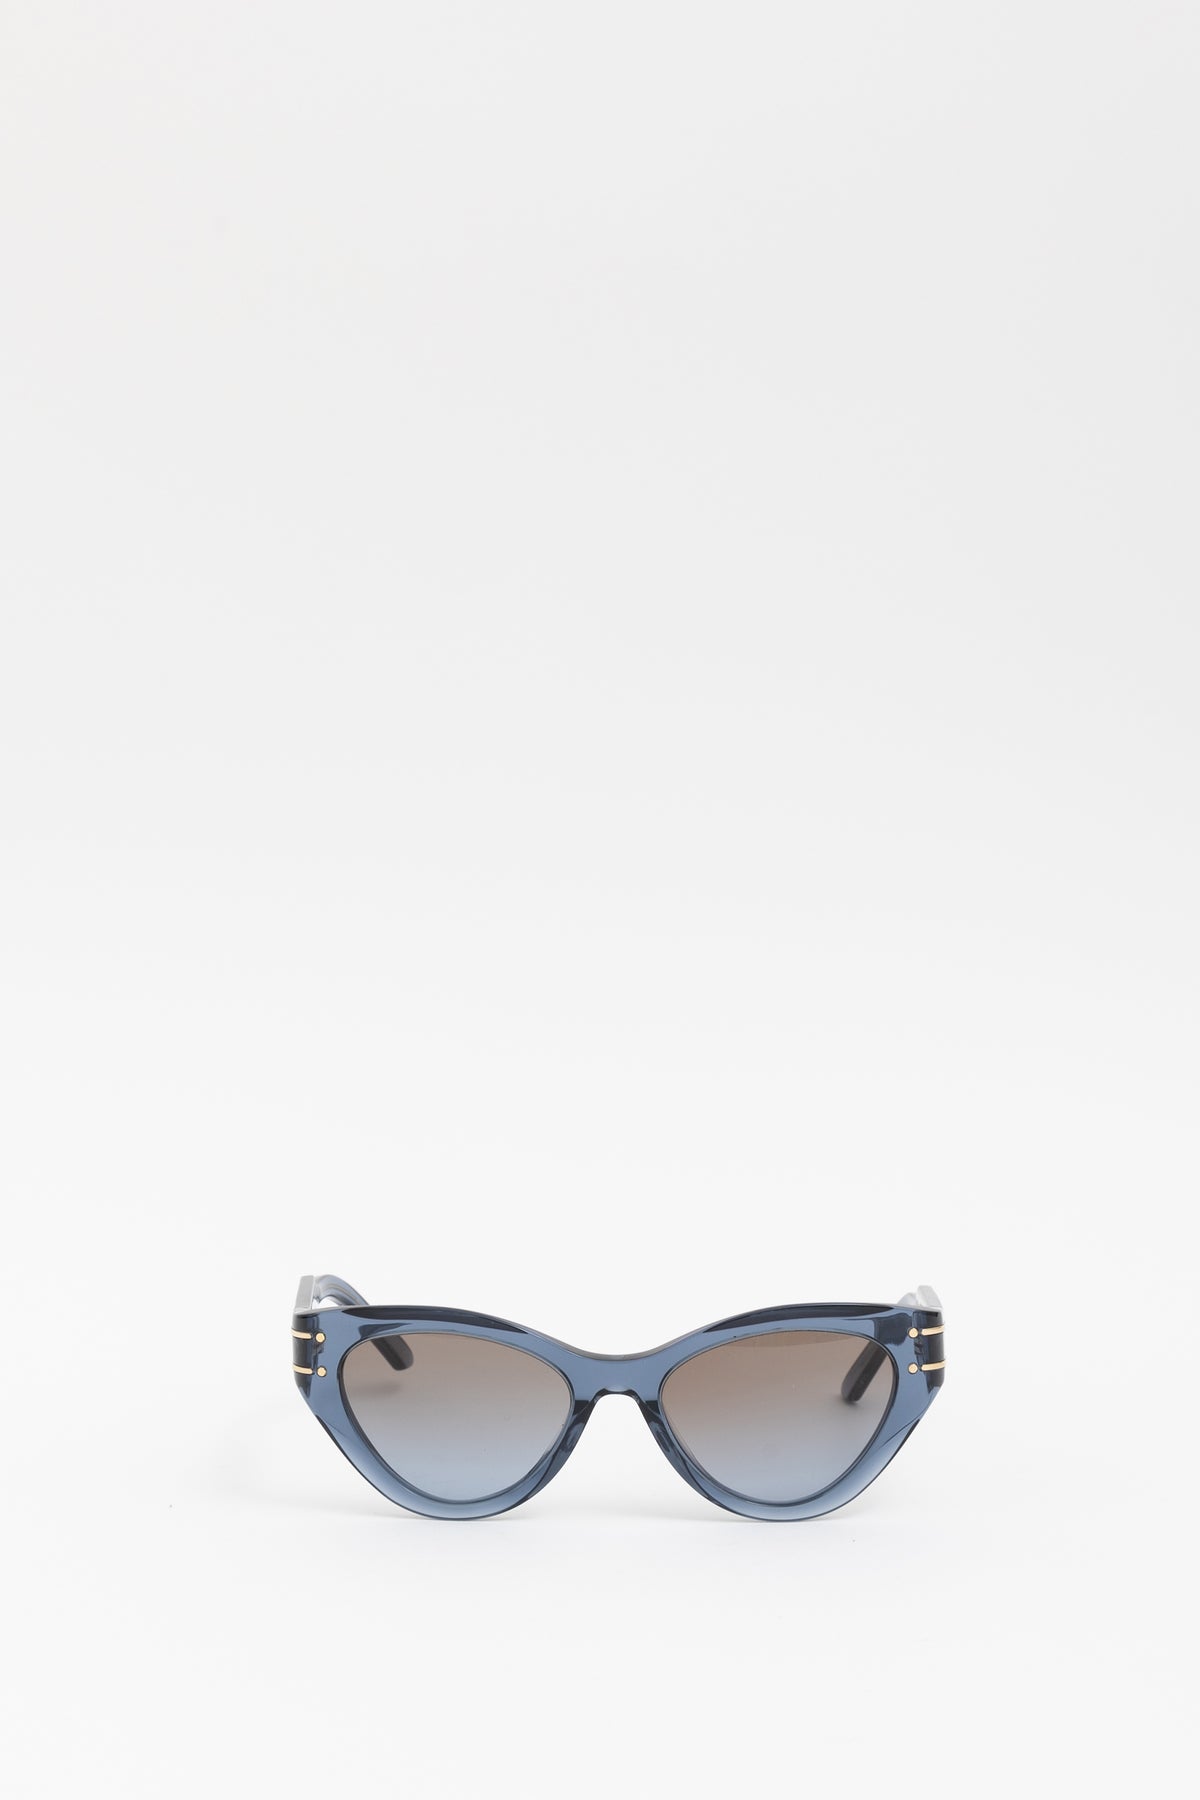 DiorSignature B7I Sunglasses